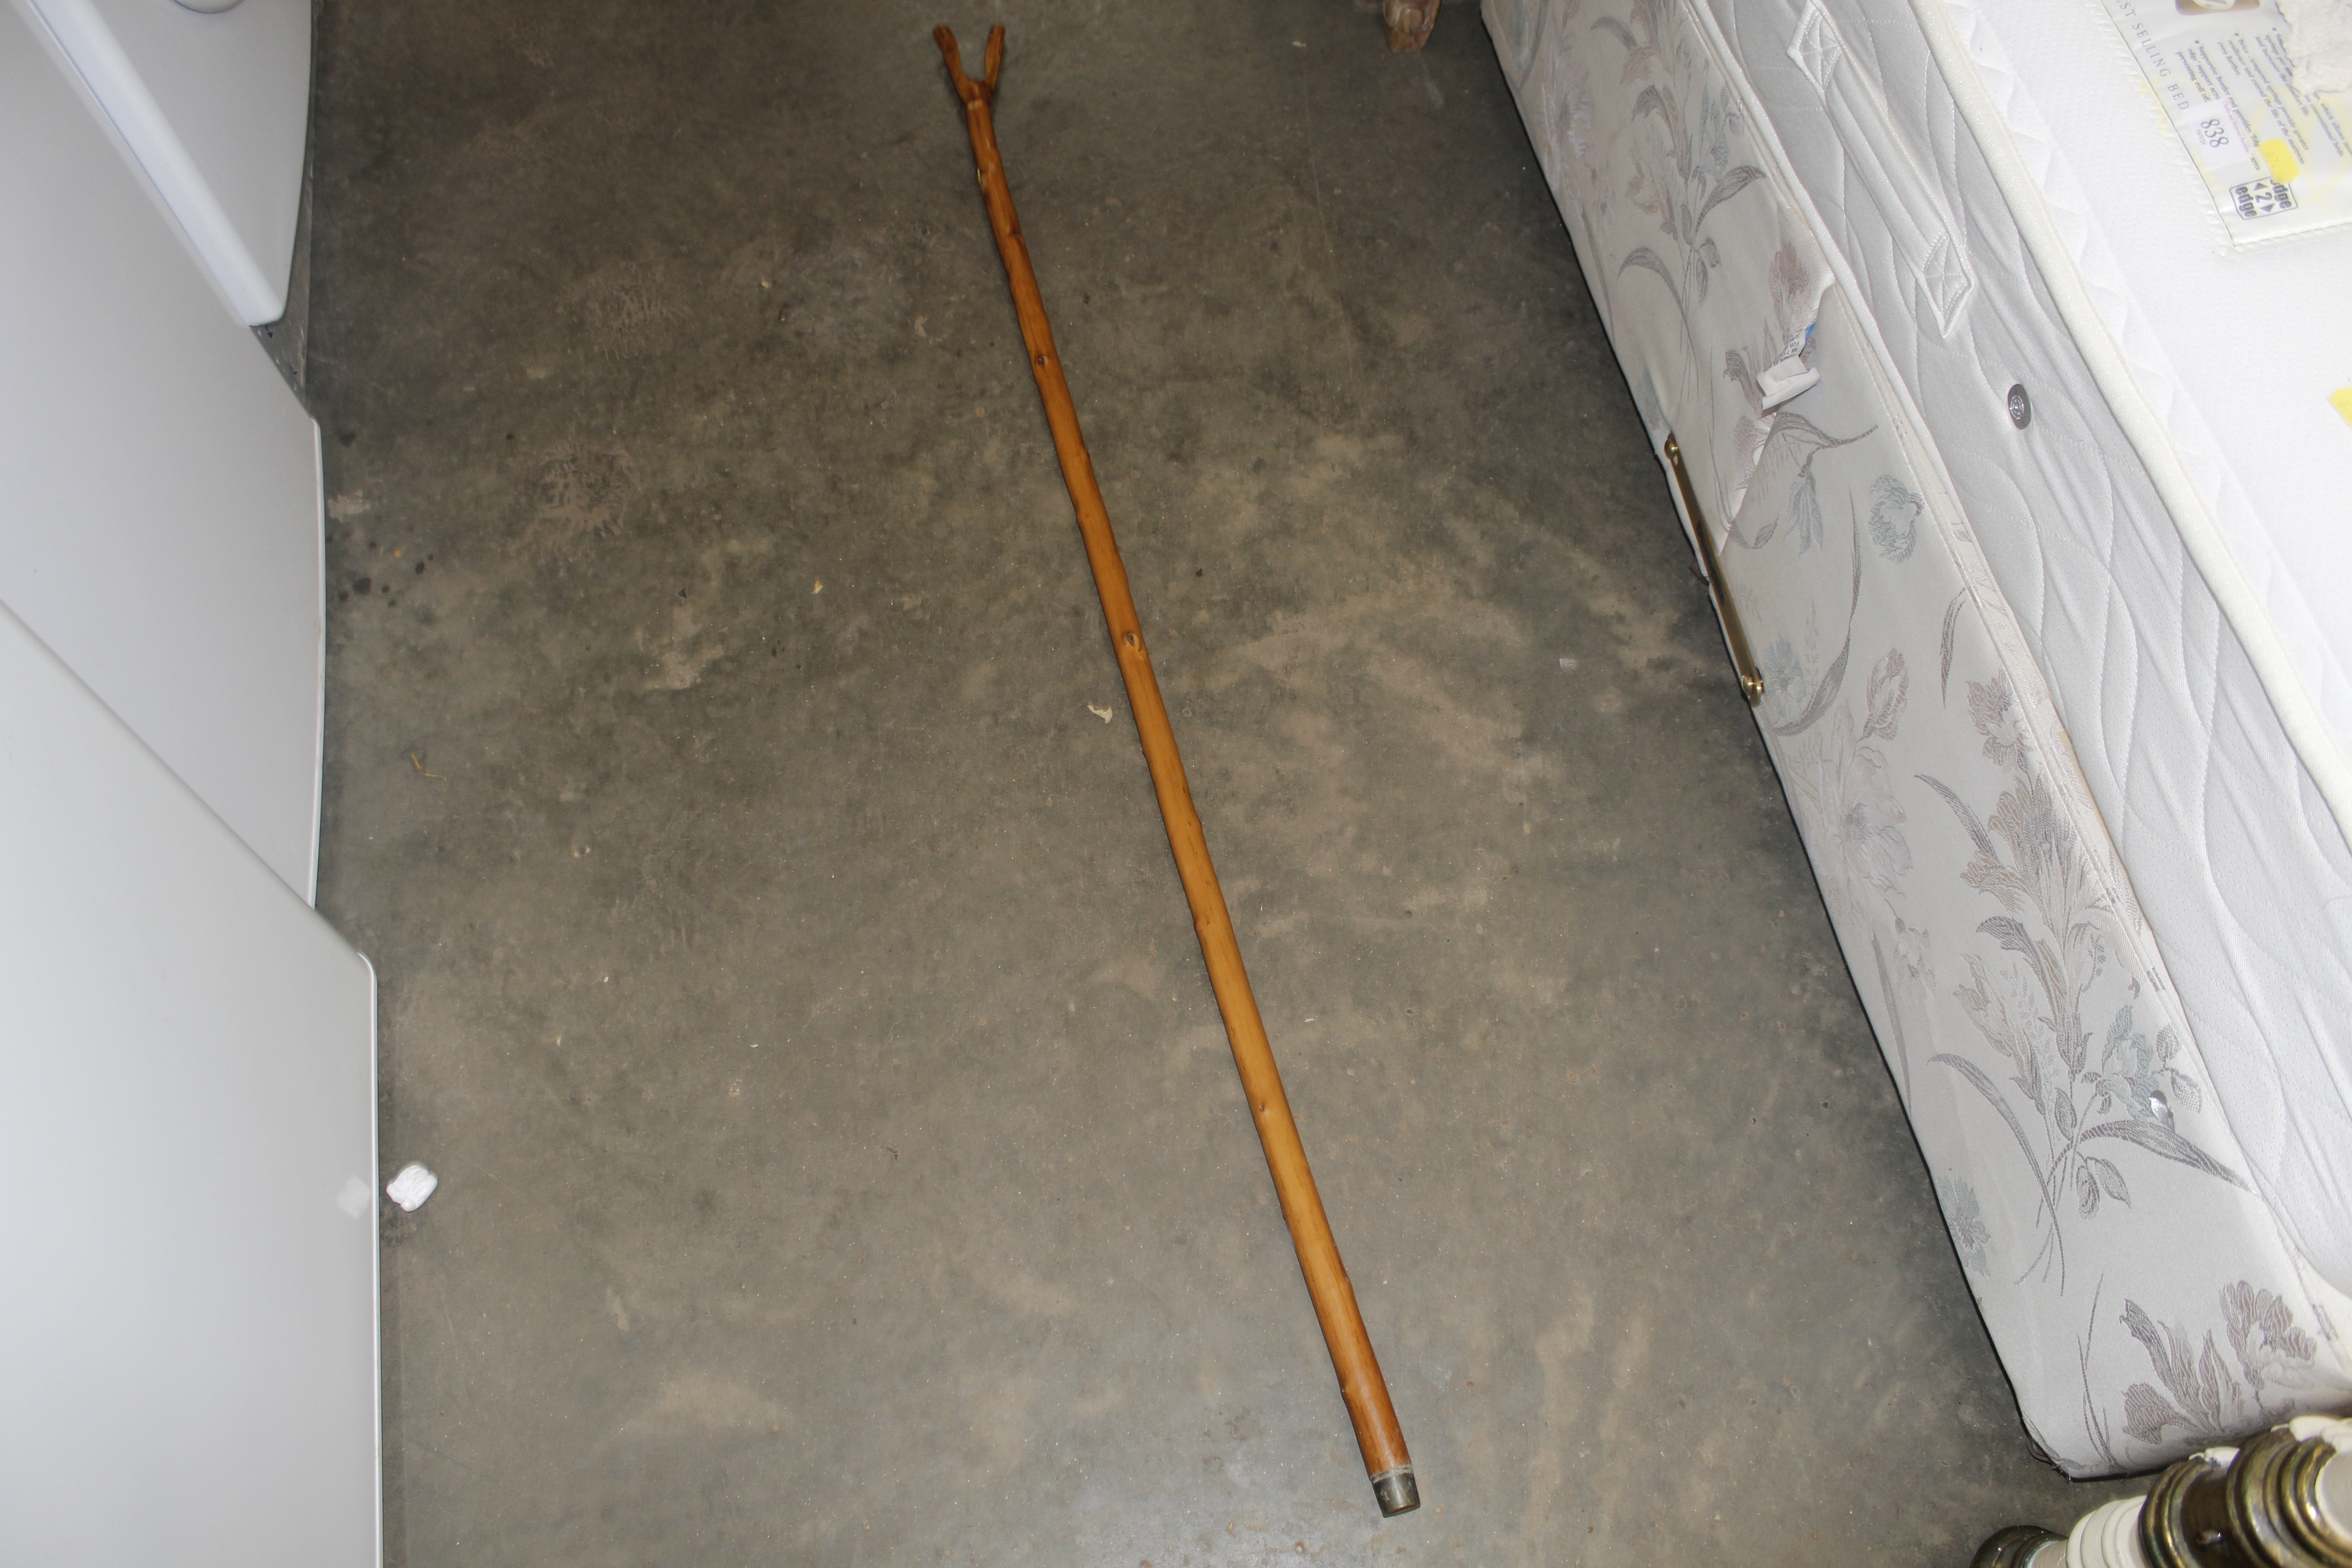 A walking stick